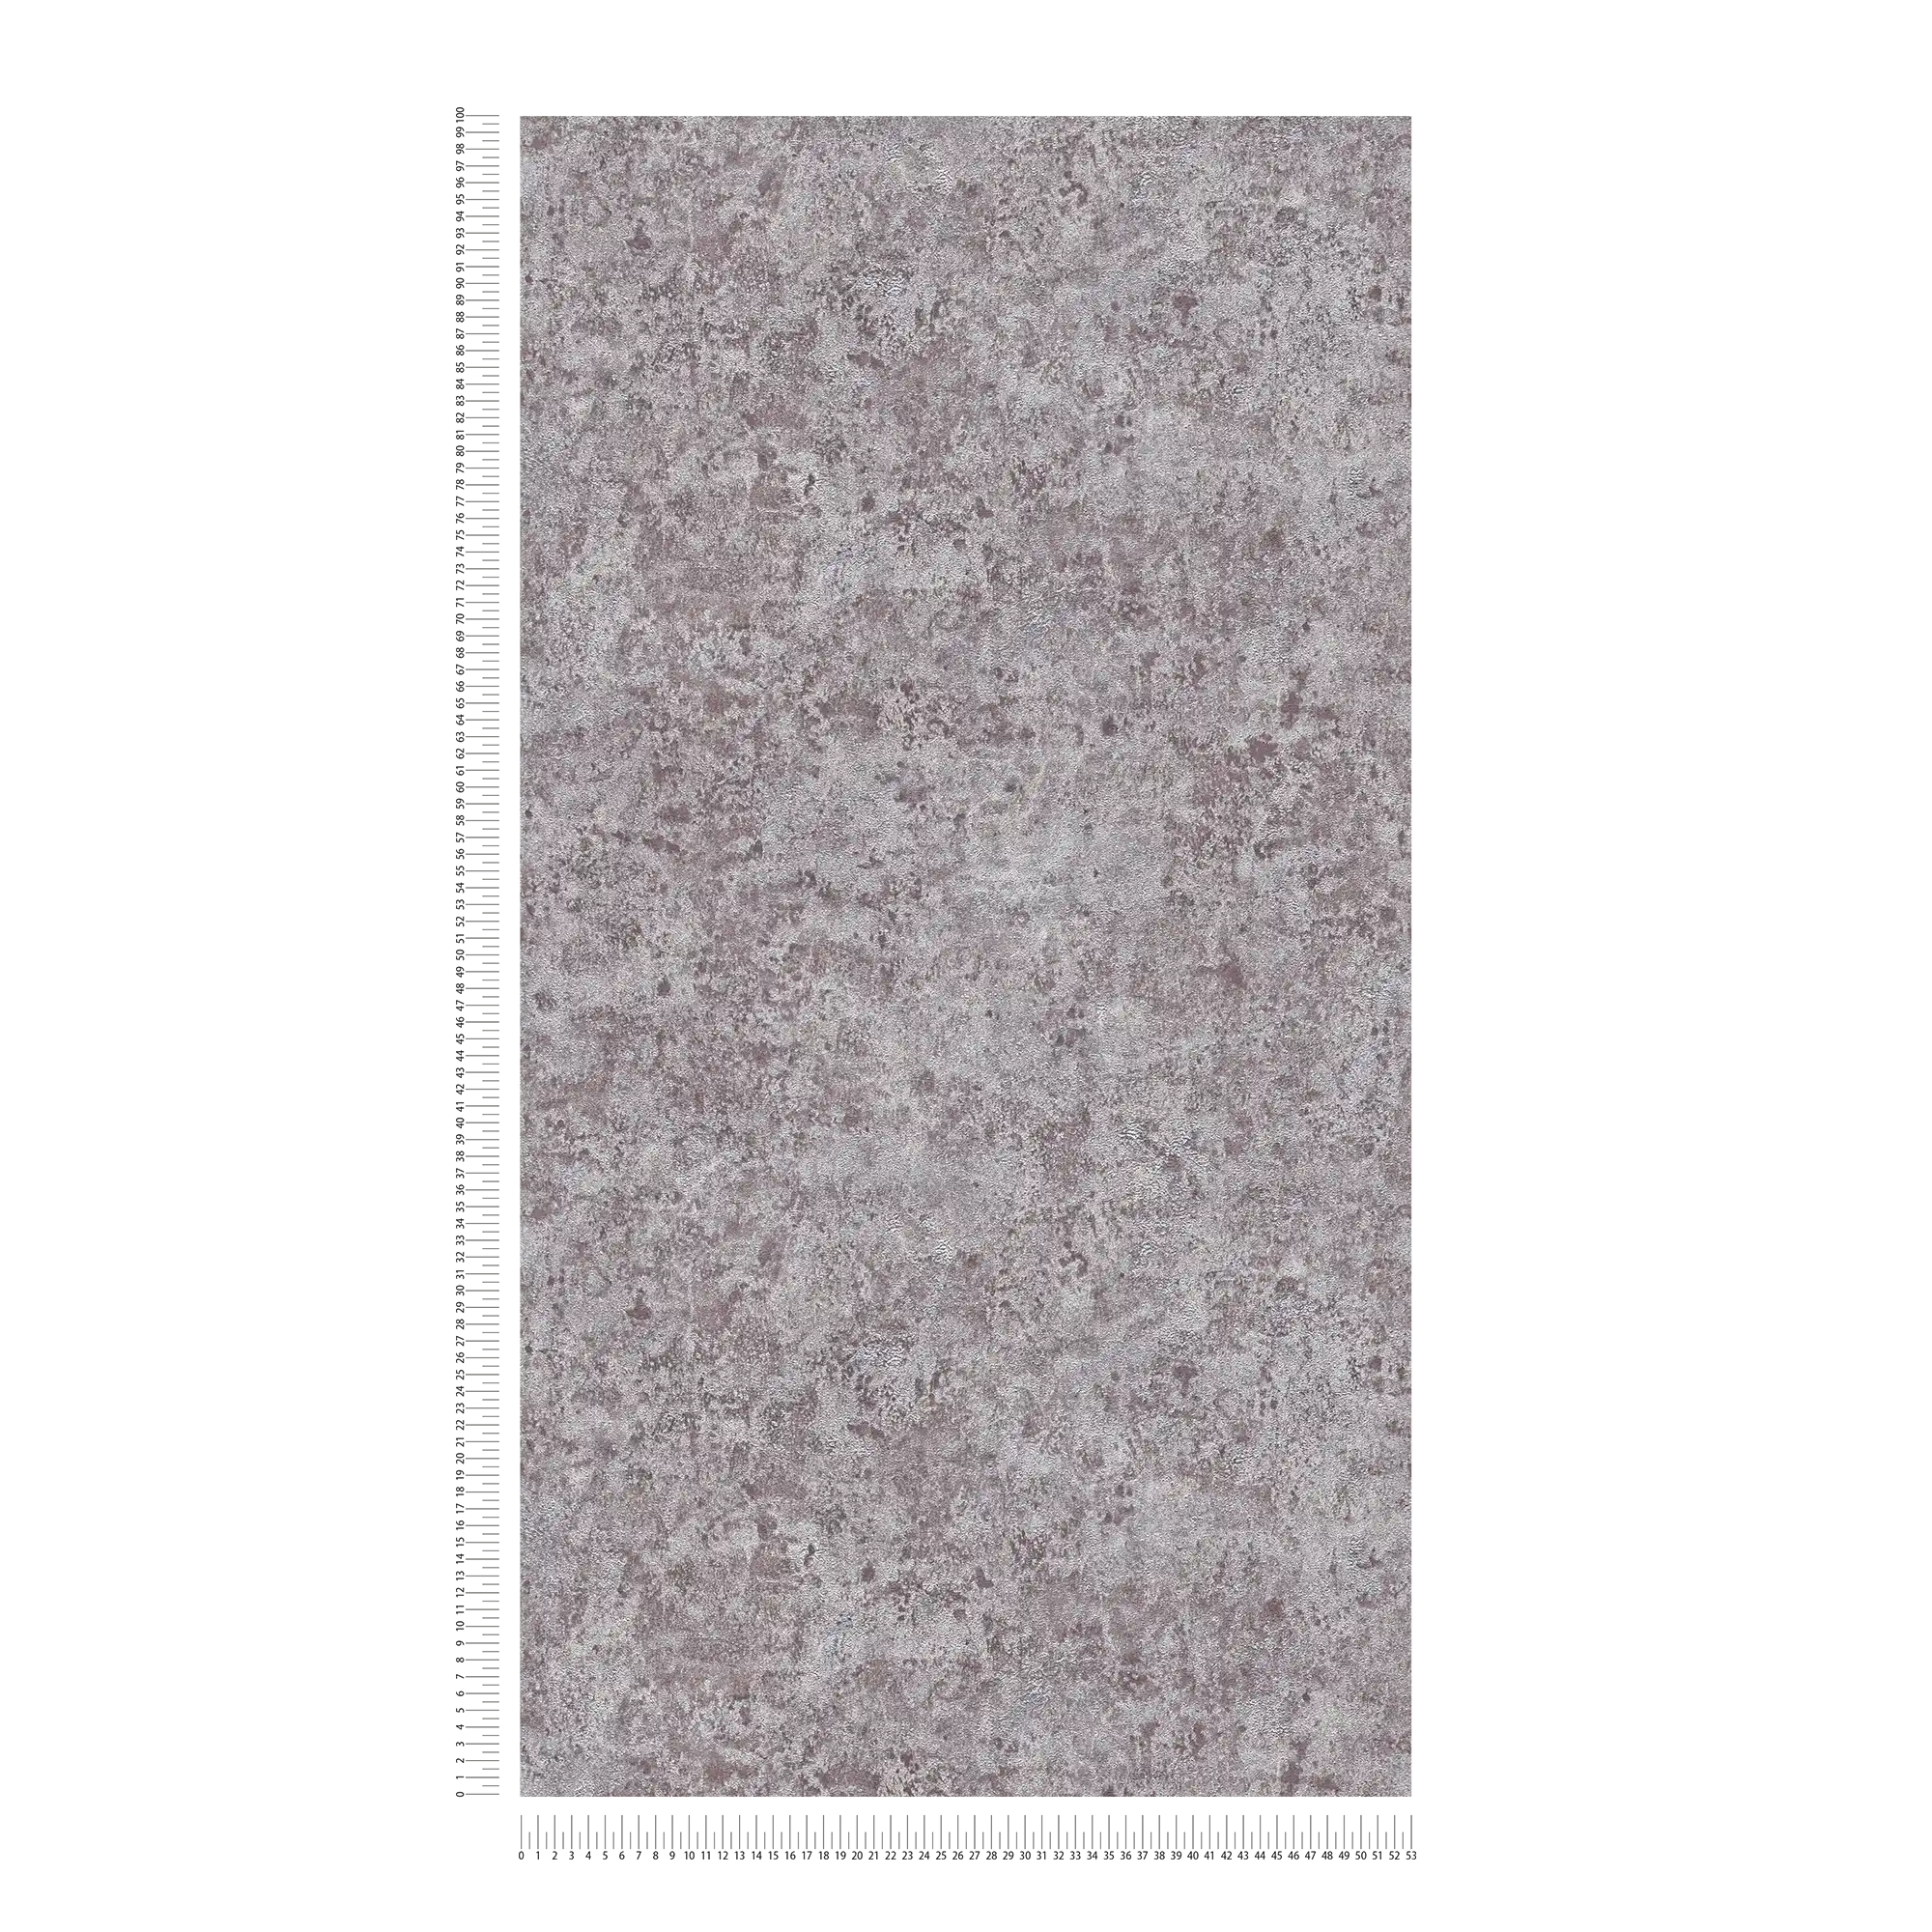             Papel pintado no tejido con efecto metálico brillante - gris, plata, marrón
        